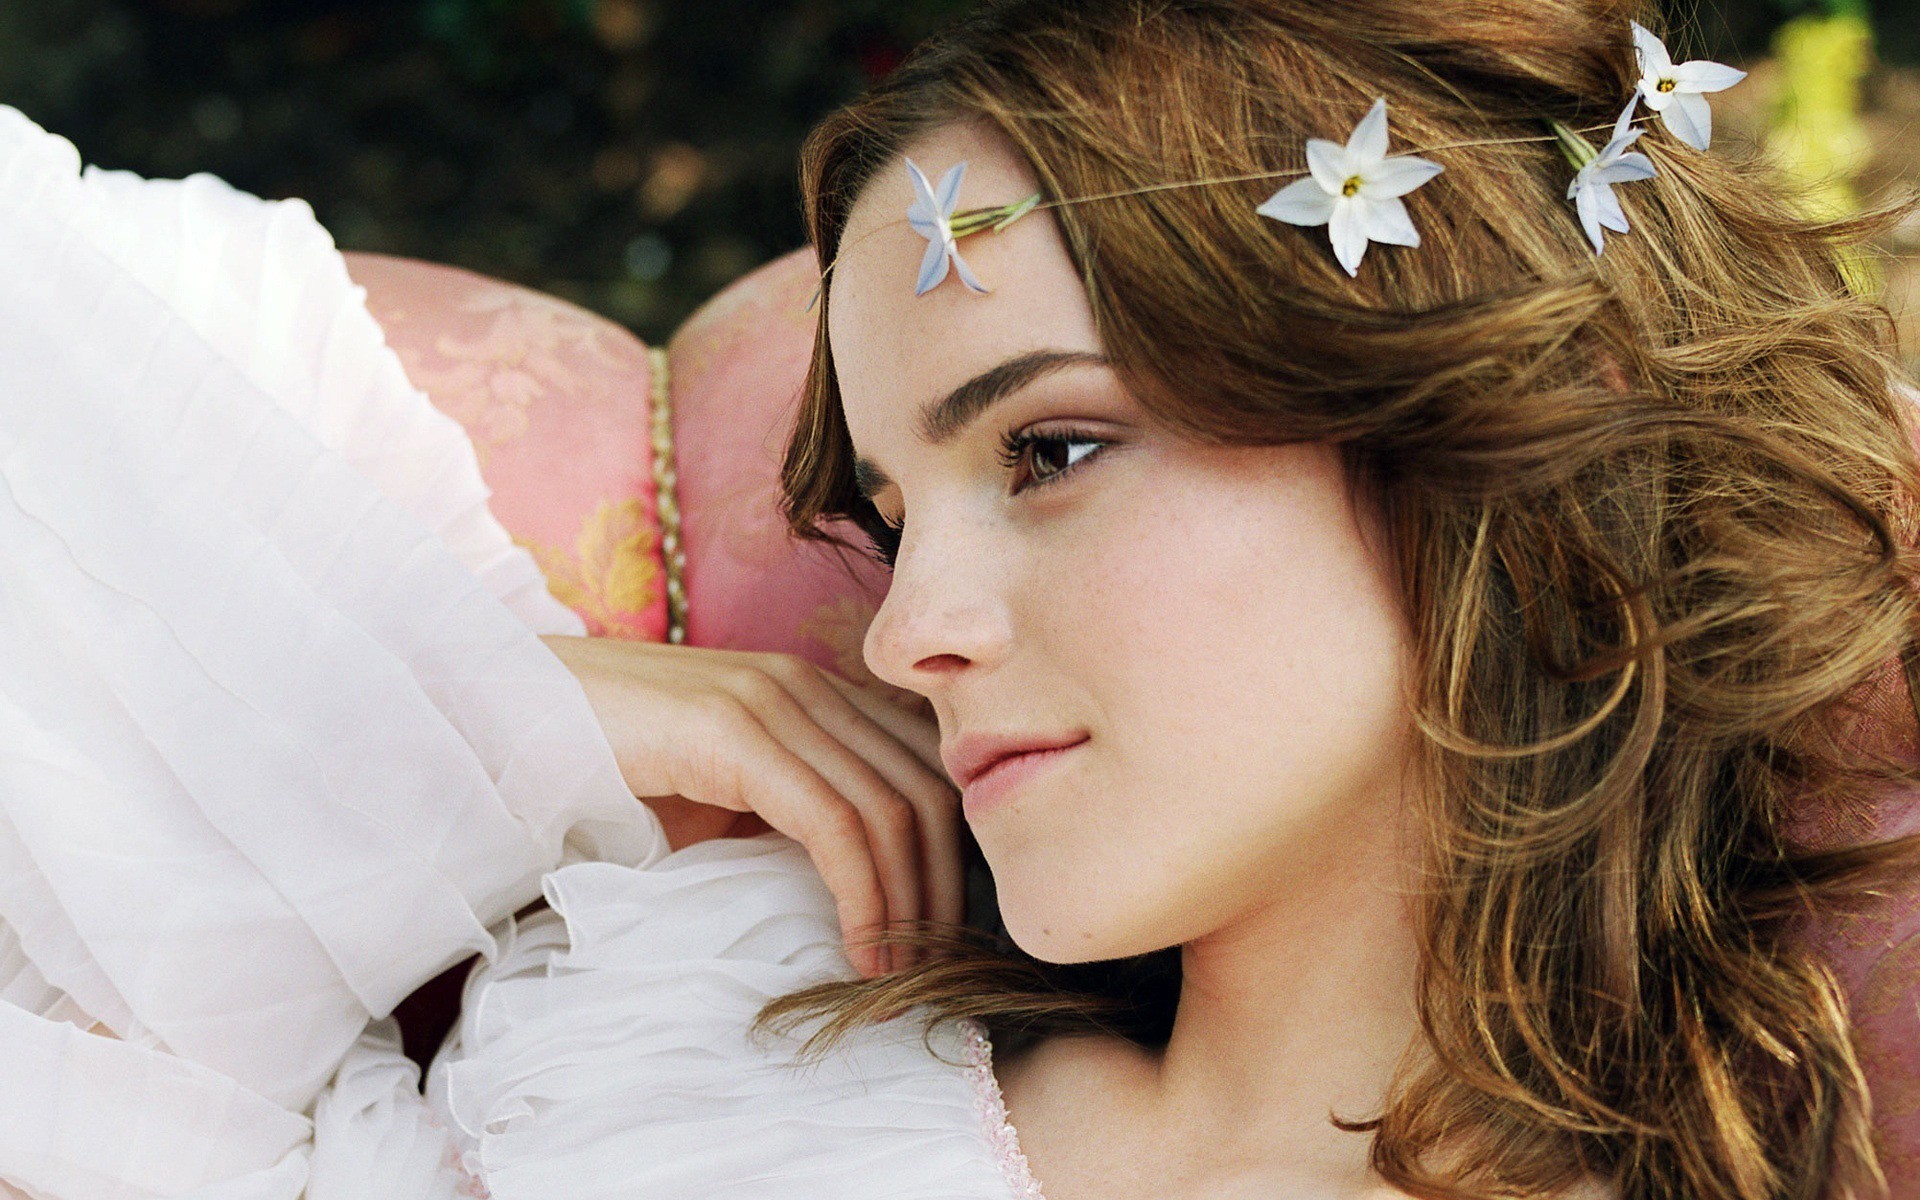 Celebrity Emma Watson HD Wallpaper